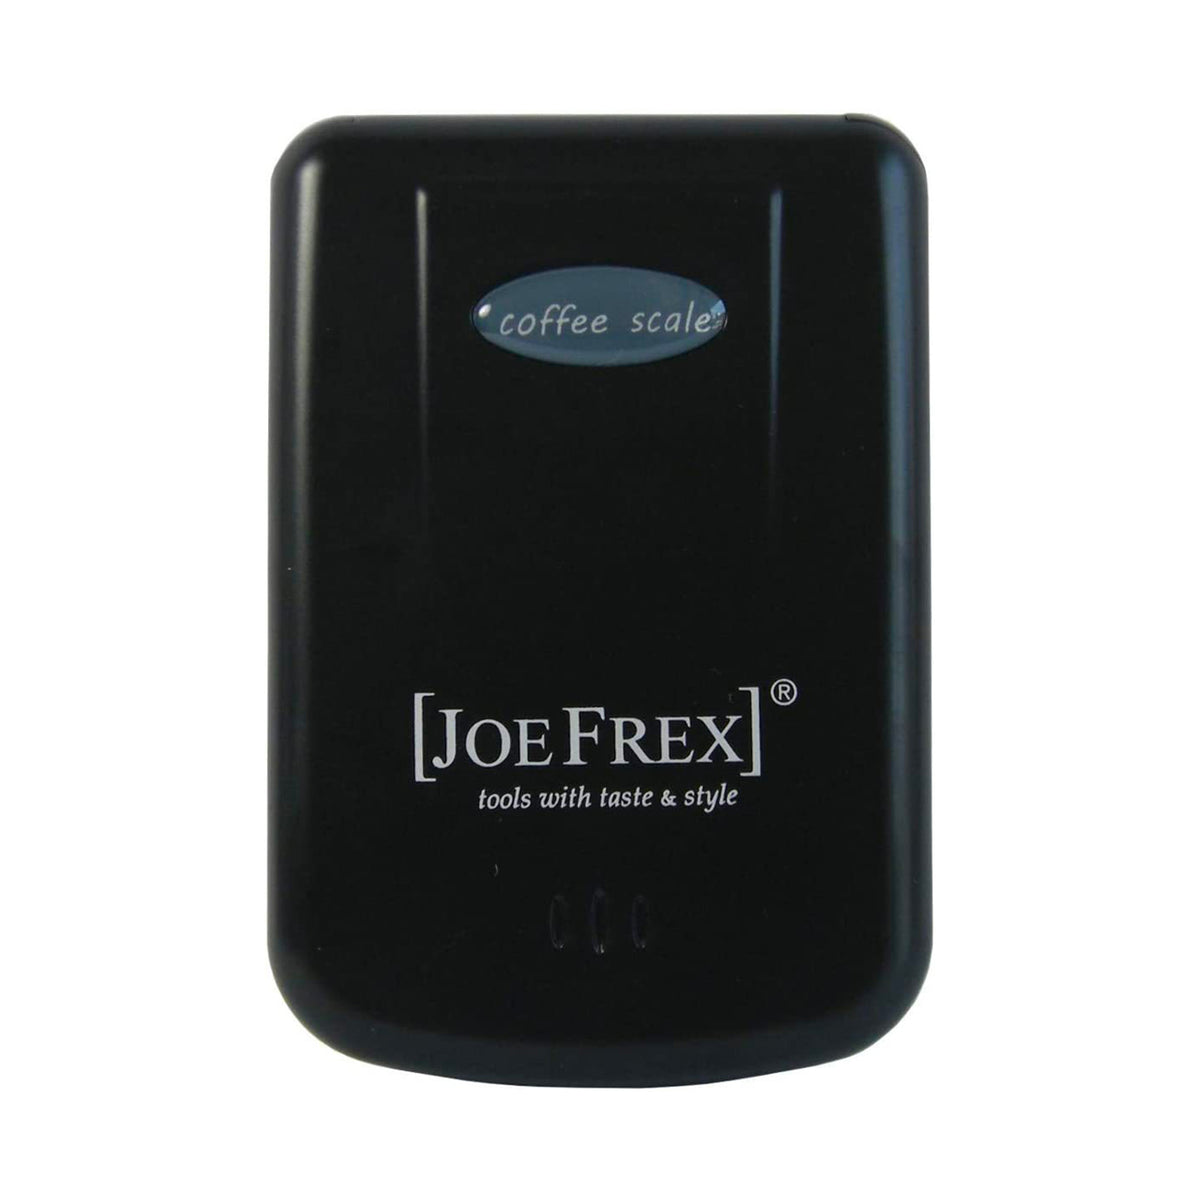 Digital Coffee Scale by Joe Frex